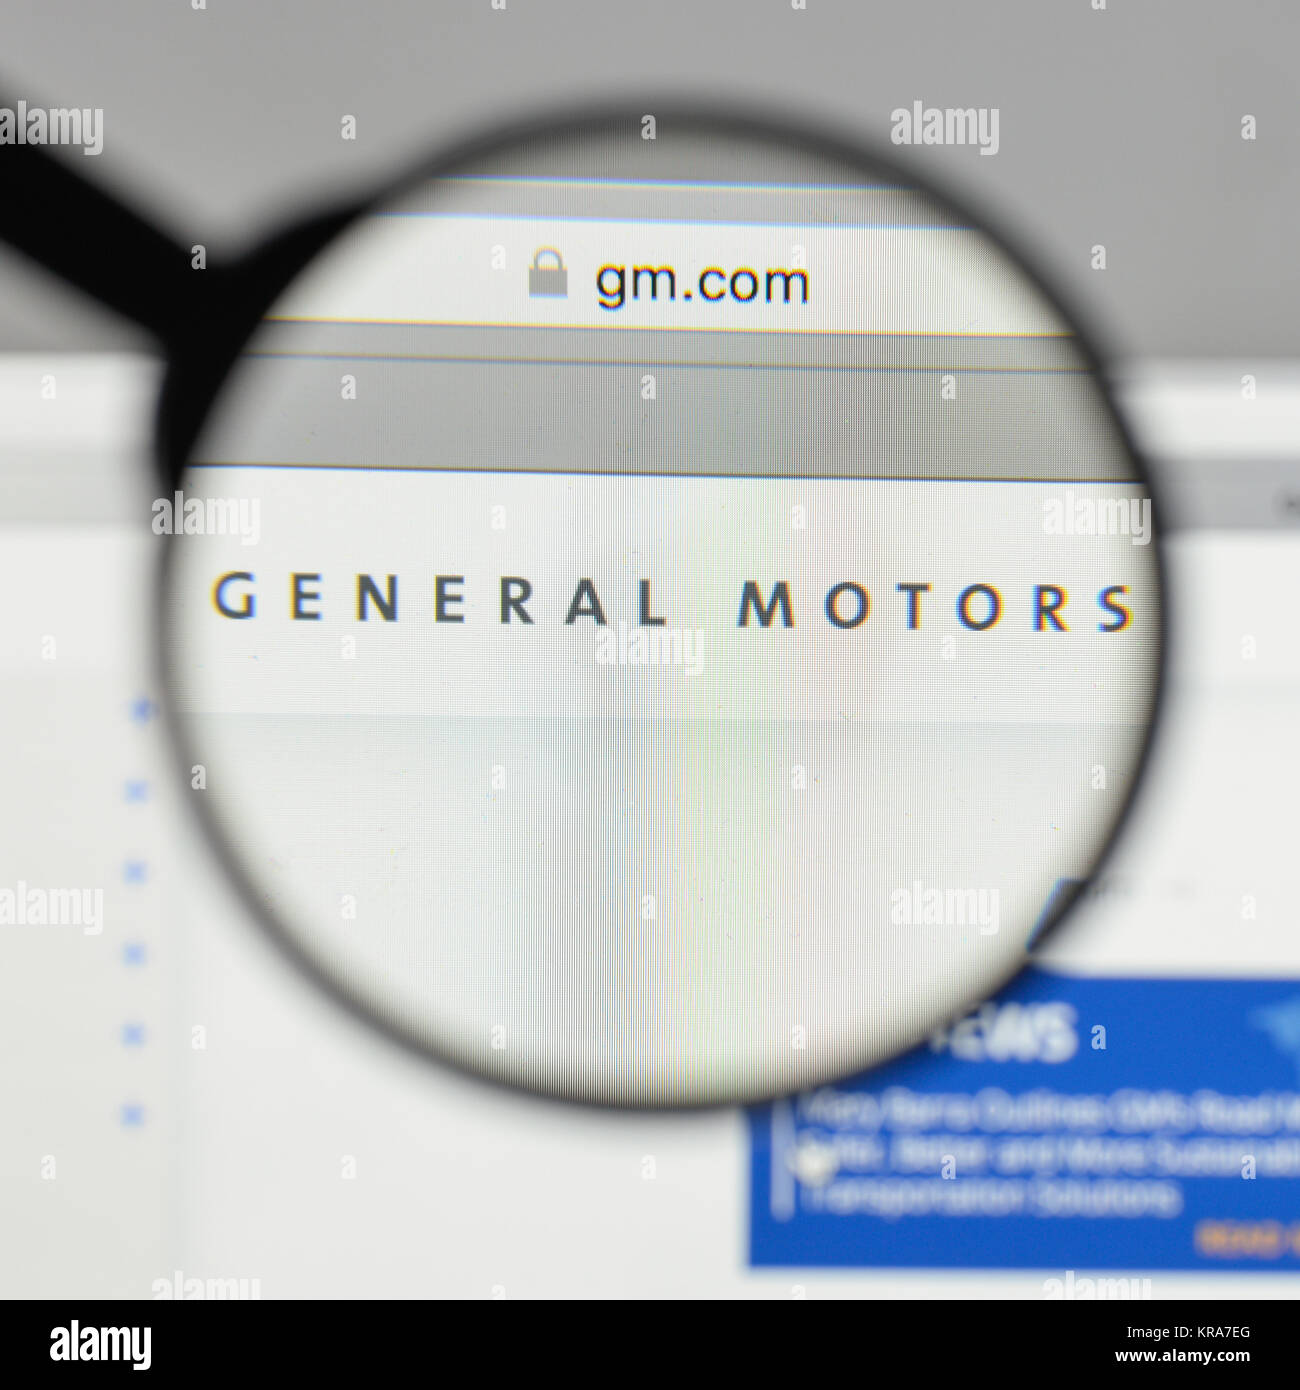 General Motors Logo Stock Photos & General Motors Logo Stock Images - Alamy1300 x 1390